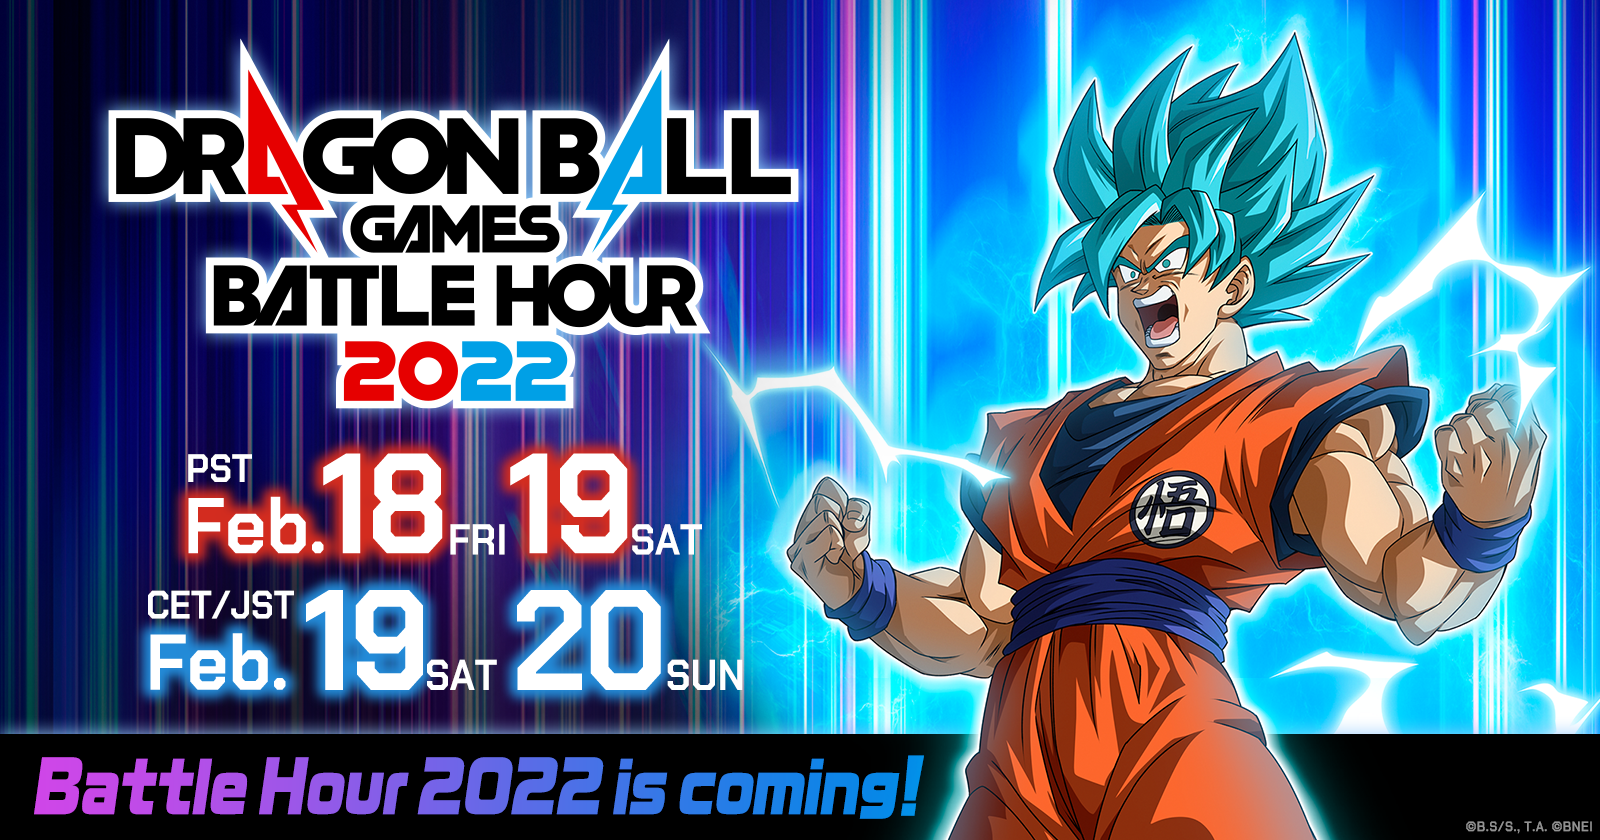 Das weltweite Online-Streaming-Event „DRAGON BALL Games Battle Hour 2022“ findet vom 19.–20. Februar JST statt!!